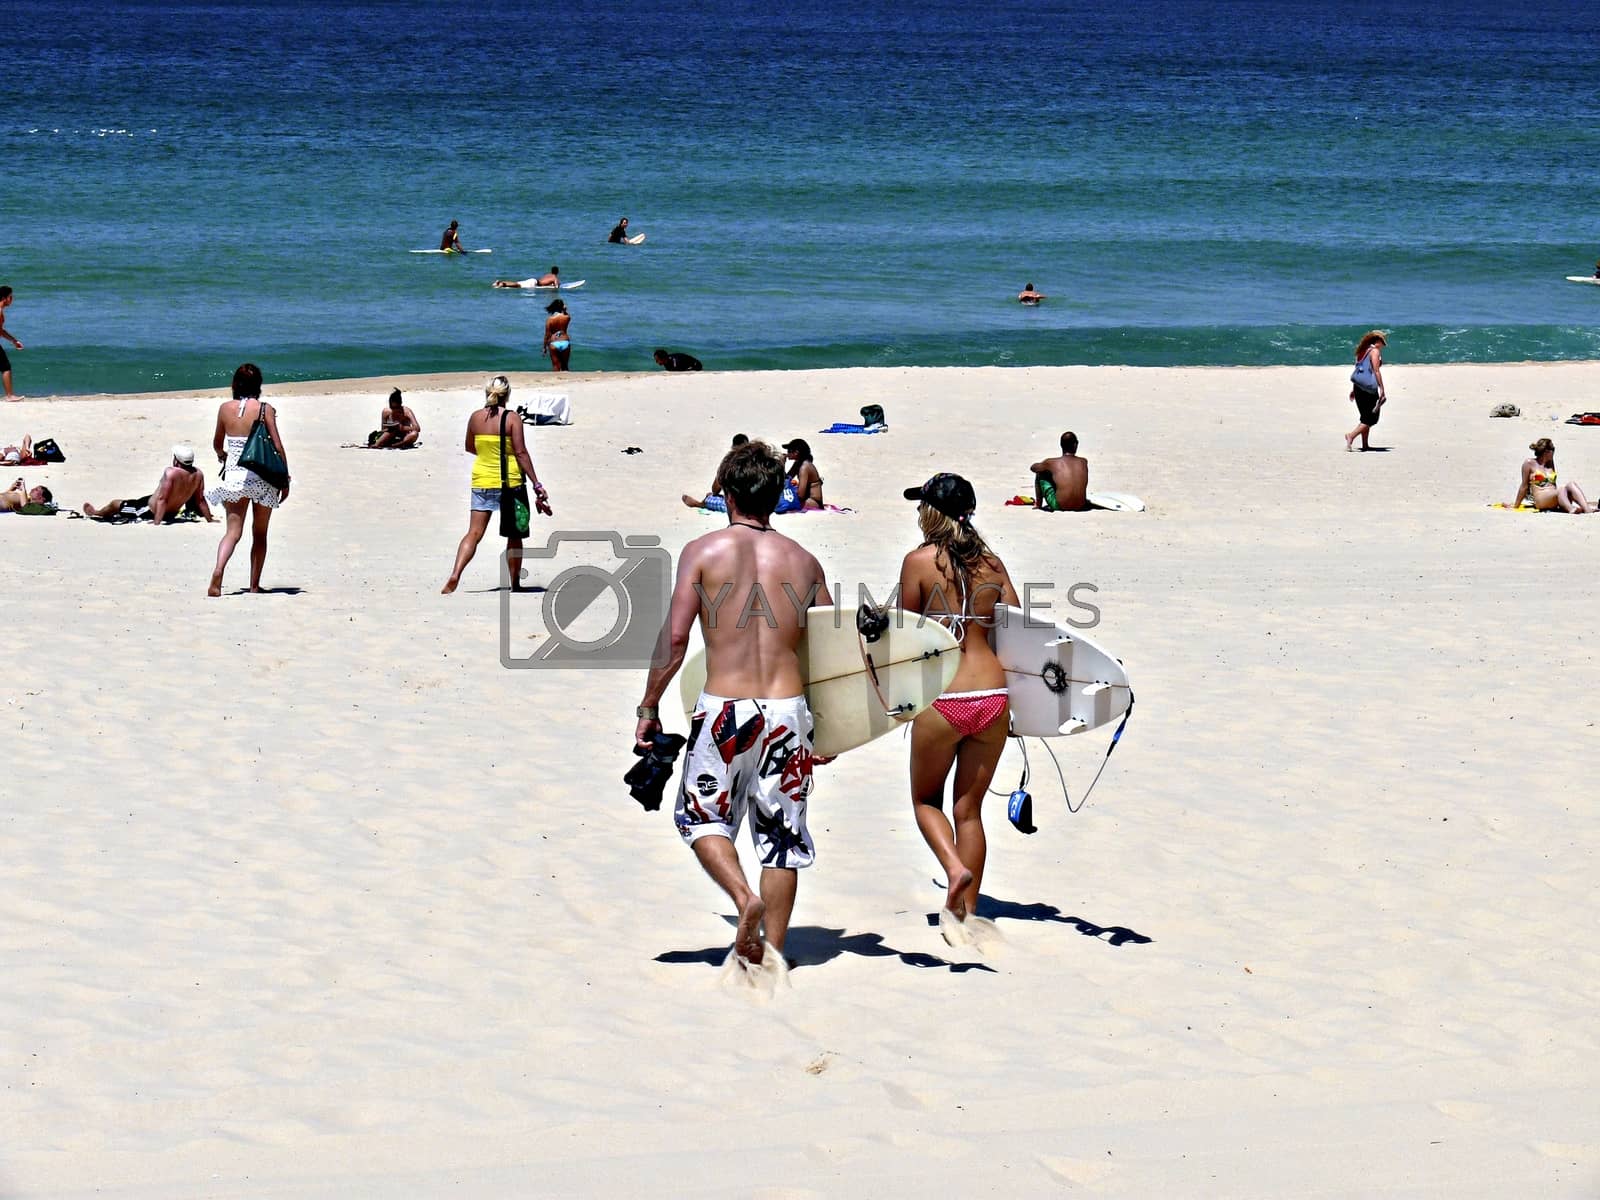 Royalty free image of Bondi beach, Sydney Australia by rainerprang@kommunikasjonskompaniet.no